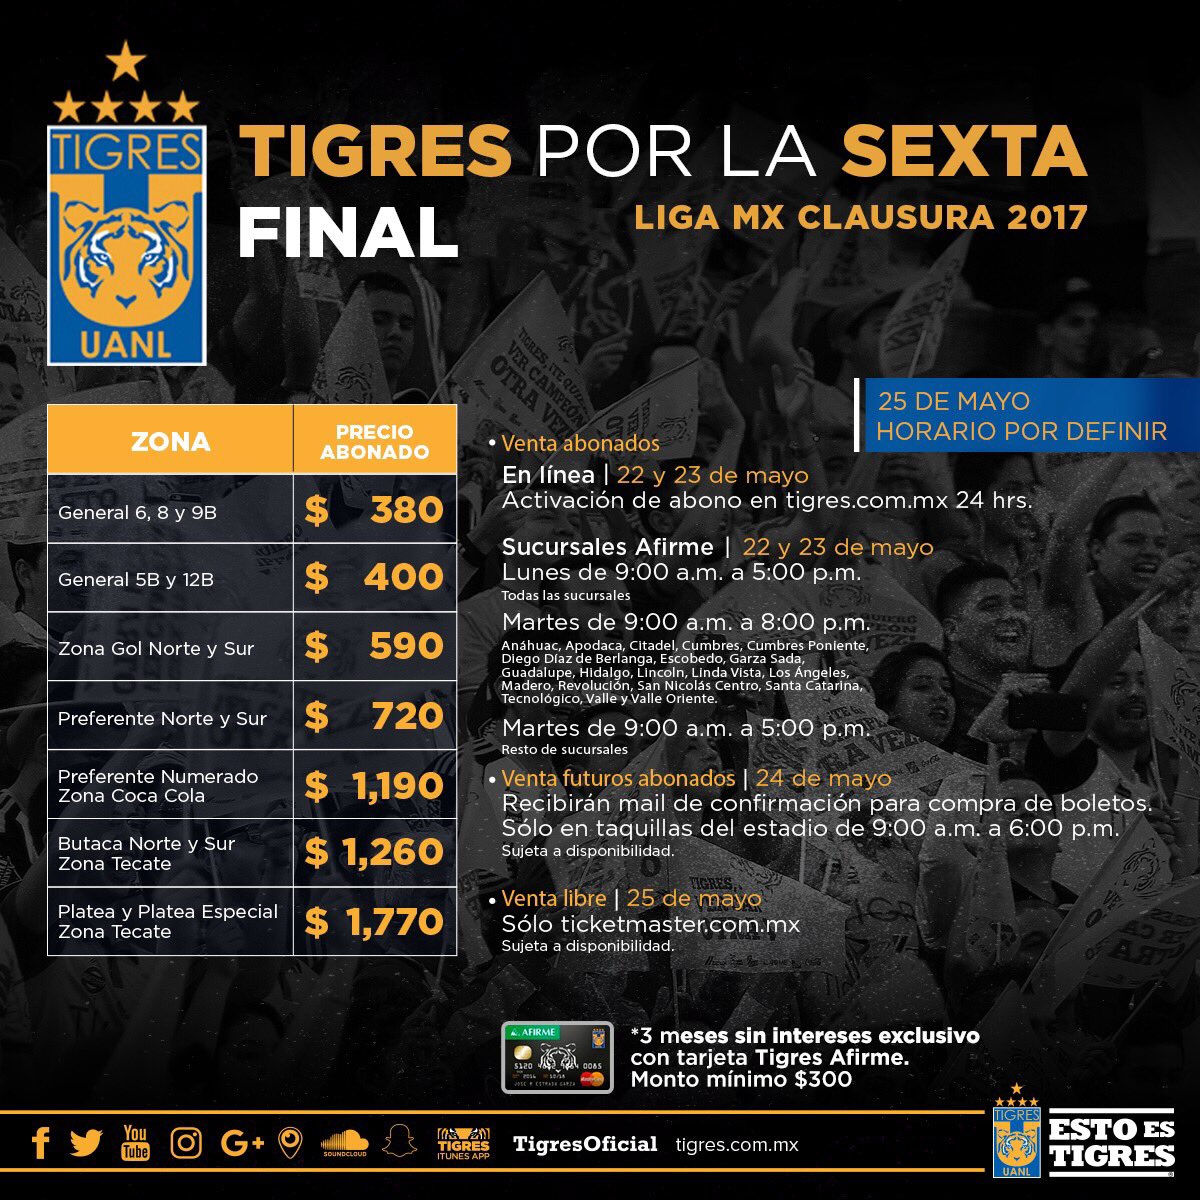 Tigres Vs Chivas Final Chivas vs. Tigres, una final inédita en el